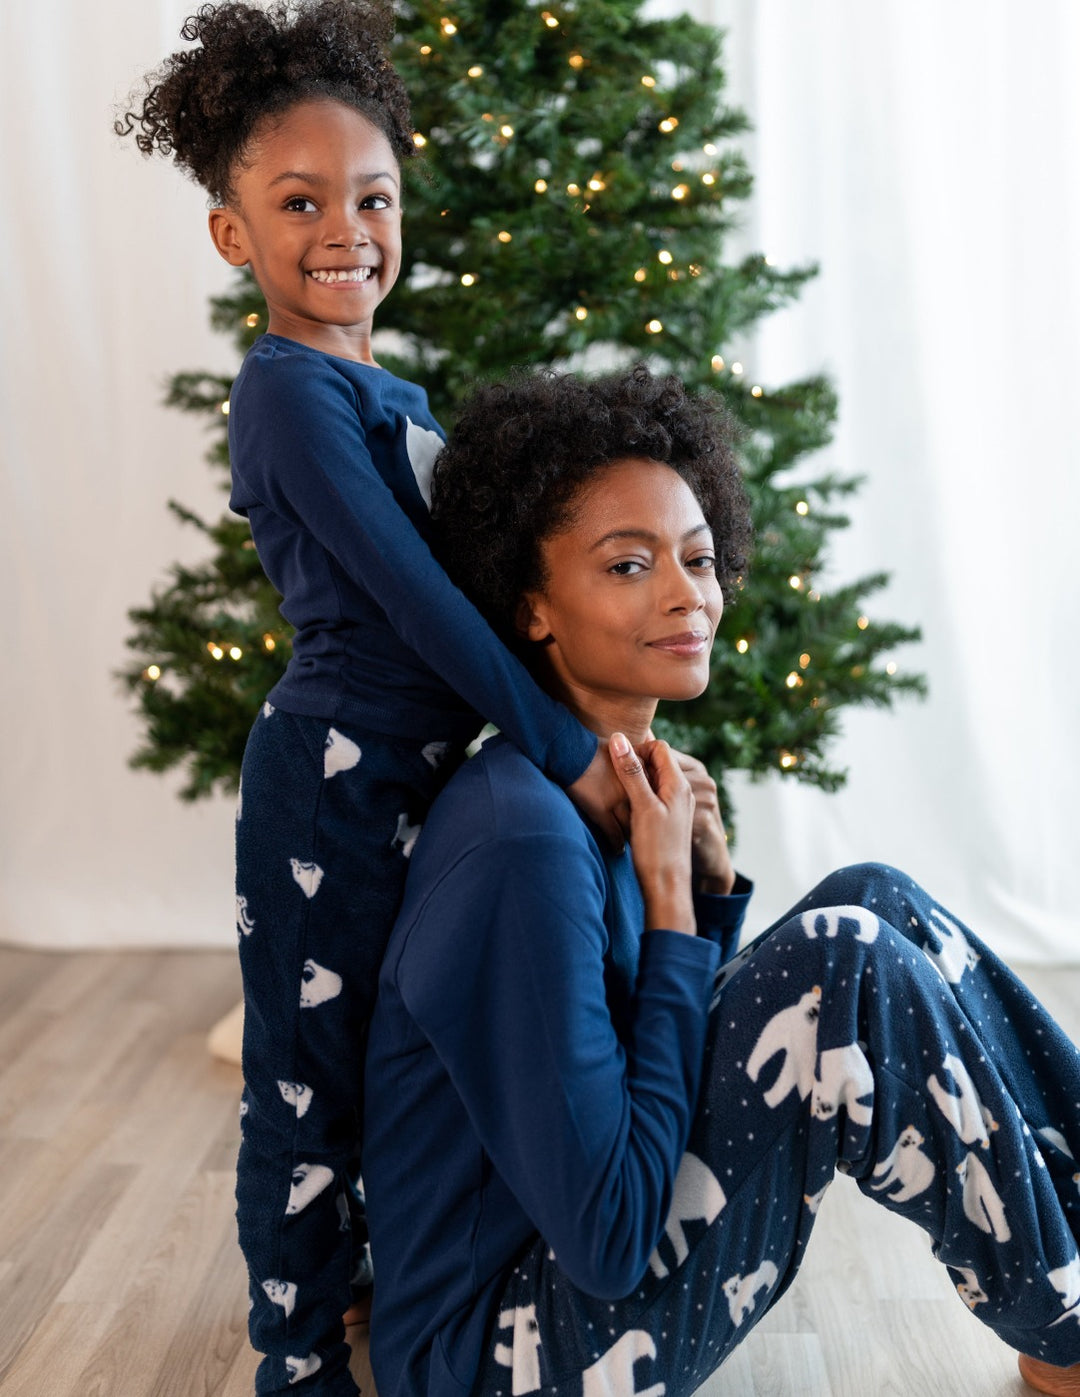 Women's Fleece Plaid Set – Leveret Clothing